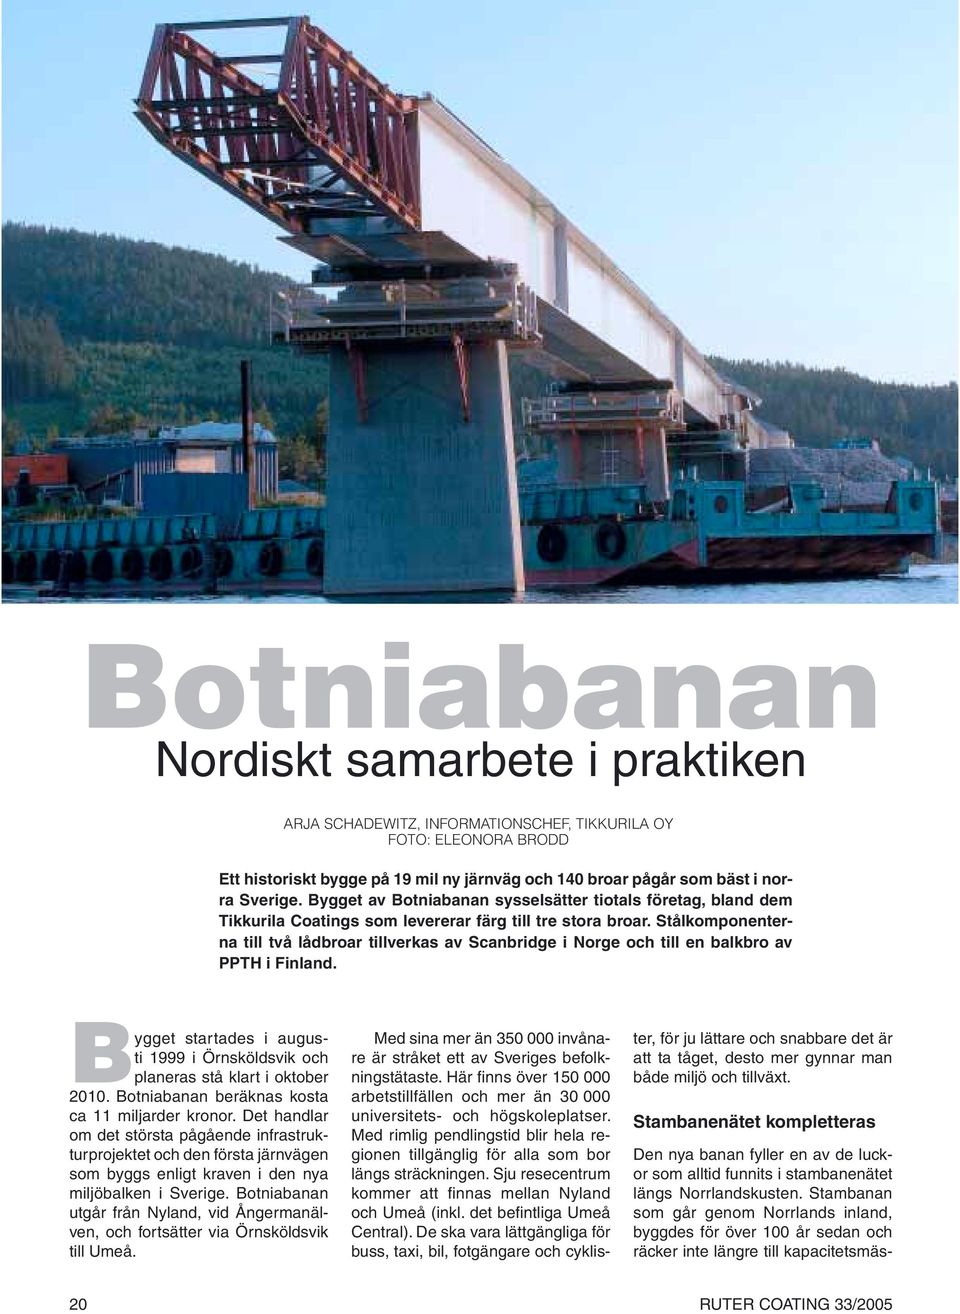 Stålkomponenterna till två lådbroar tillverkas av Scanbridge i Norge och till en balkbro av PPTH i Finland. Bygget startades i augusti 1999 i Örnsköldsvik och planeras stå klart i oktober 2010.